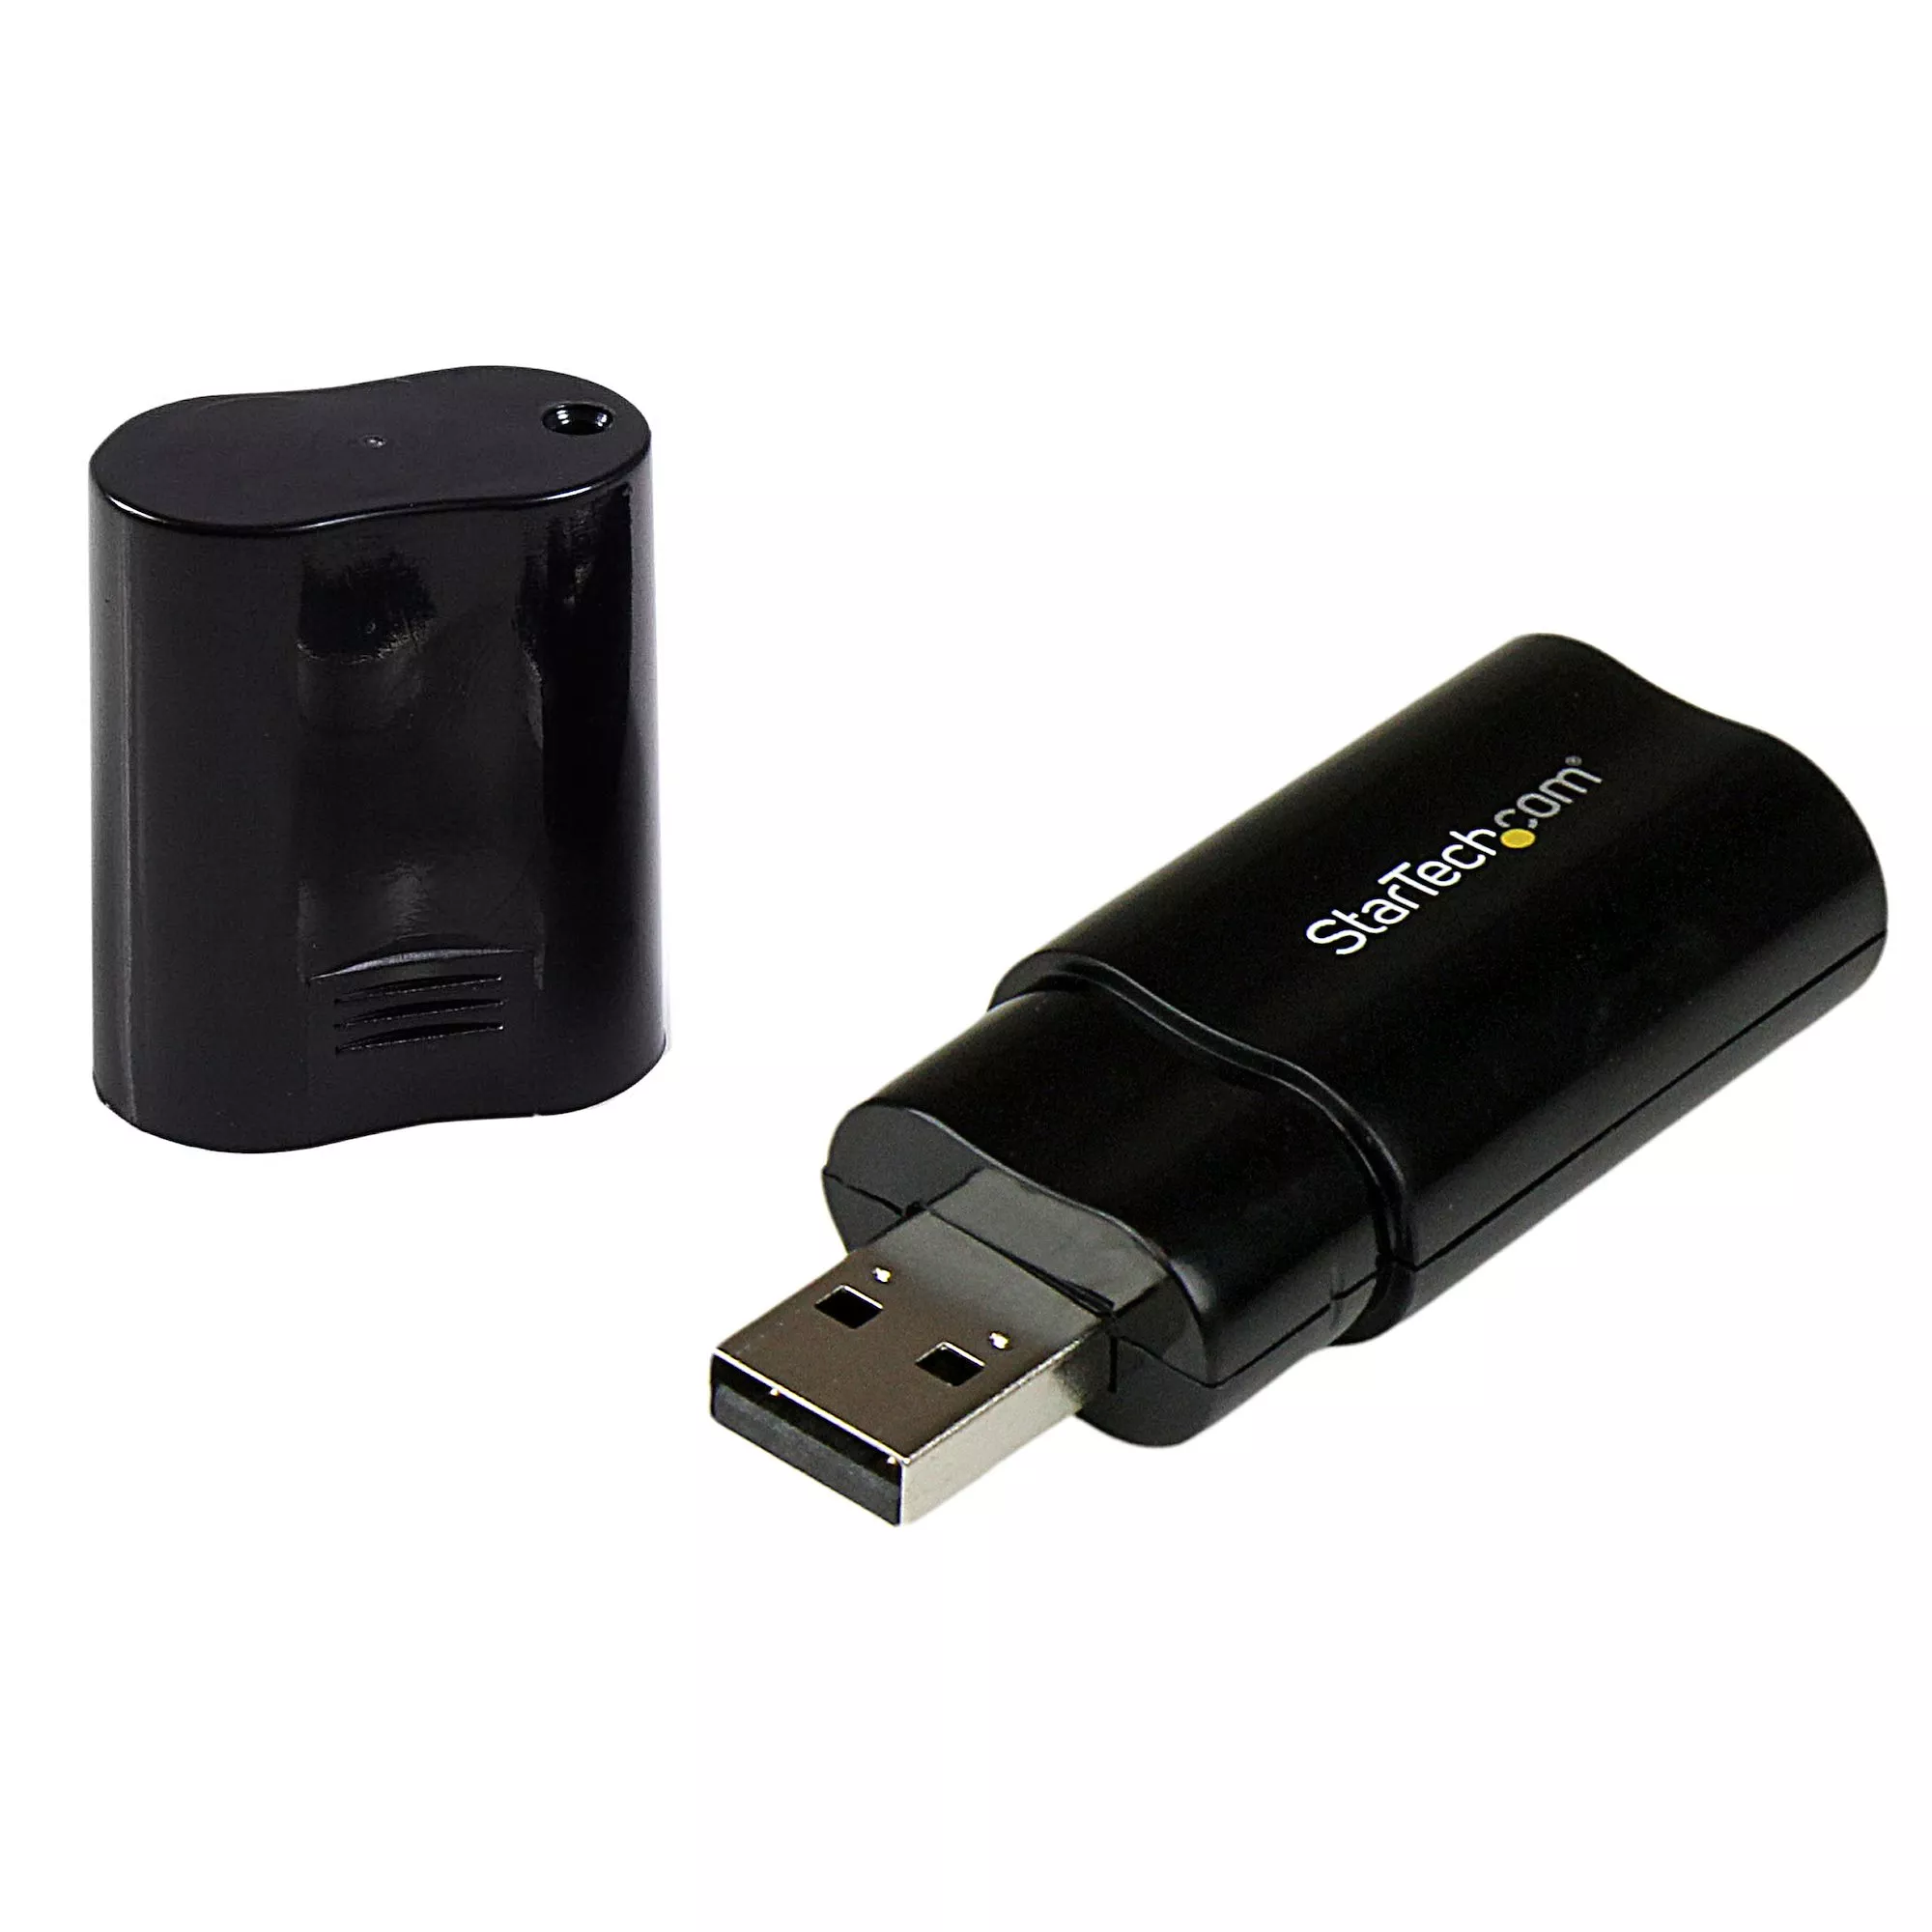 Achat StarTech.com Adaptateur Carte Son USB vers Audio Stéréo au meilleur prix